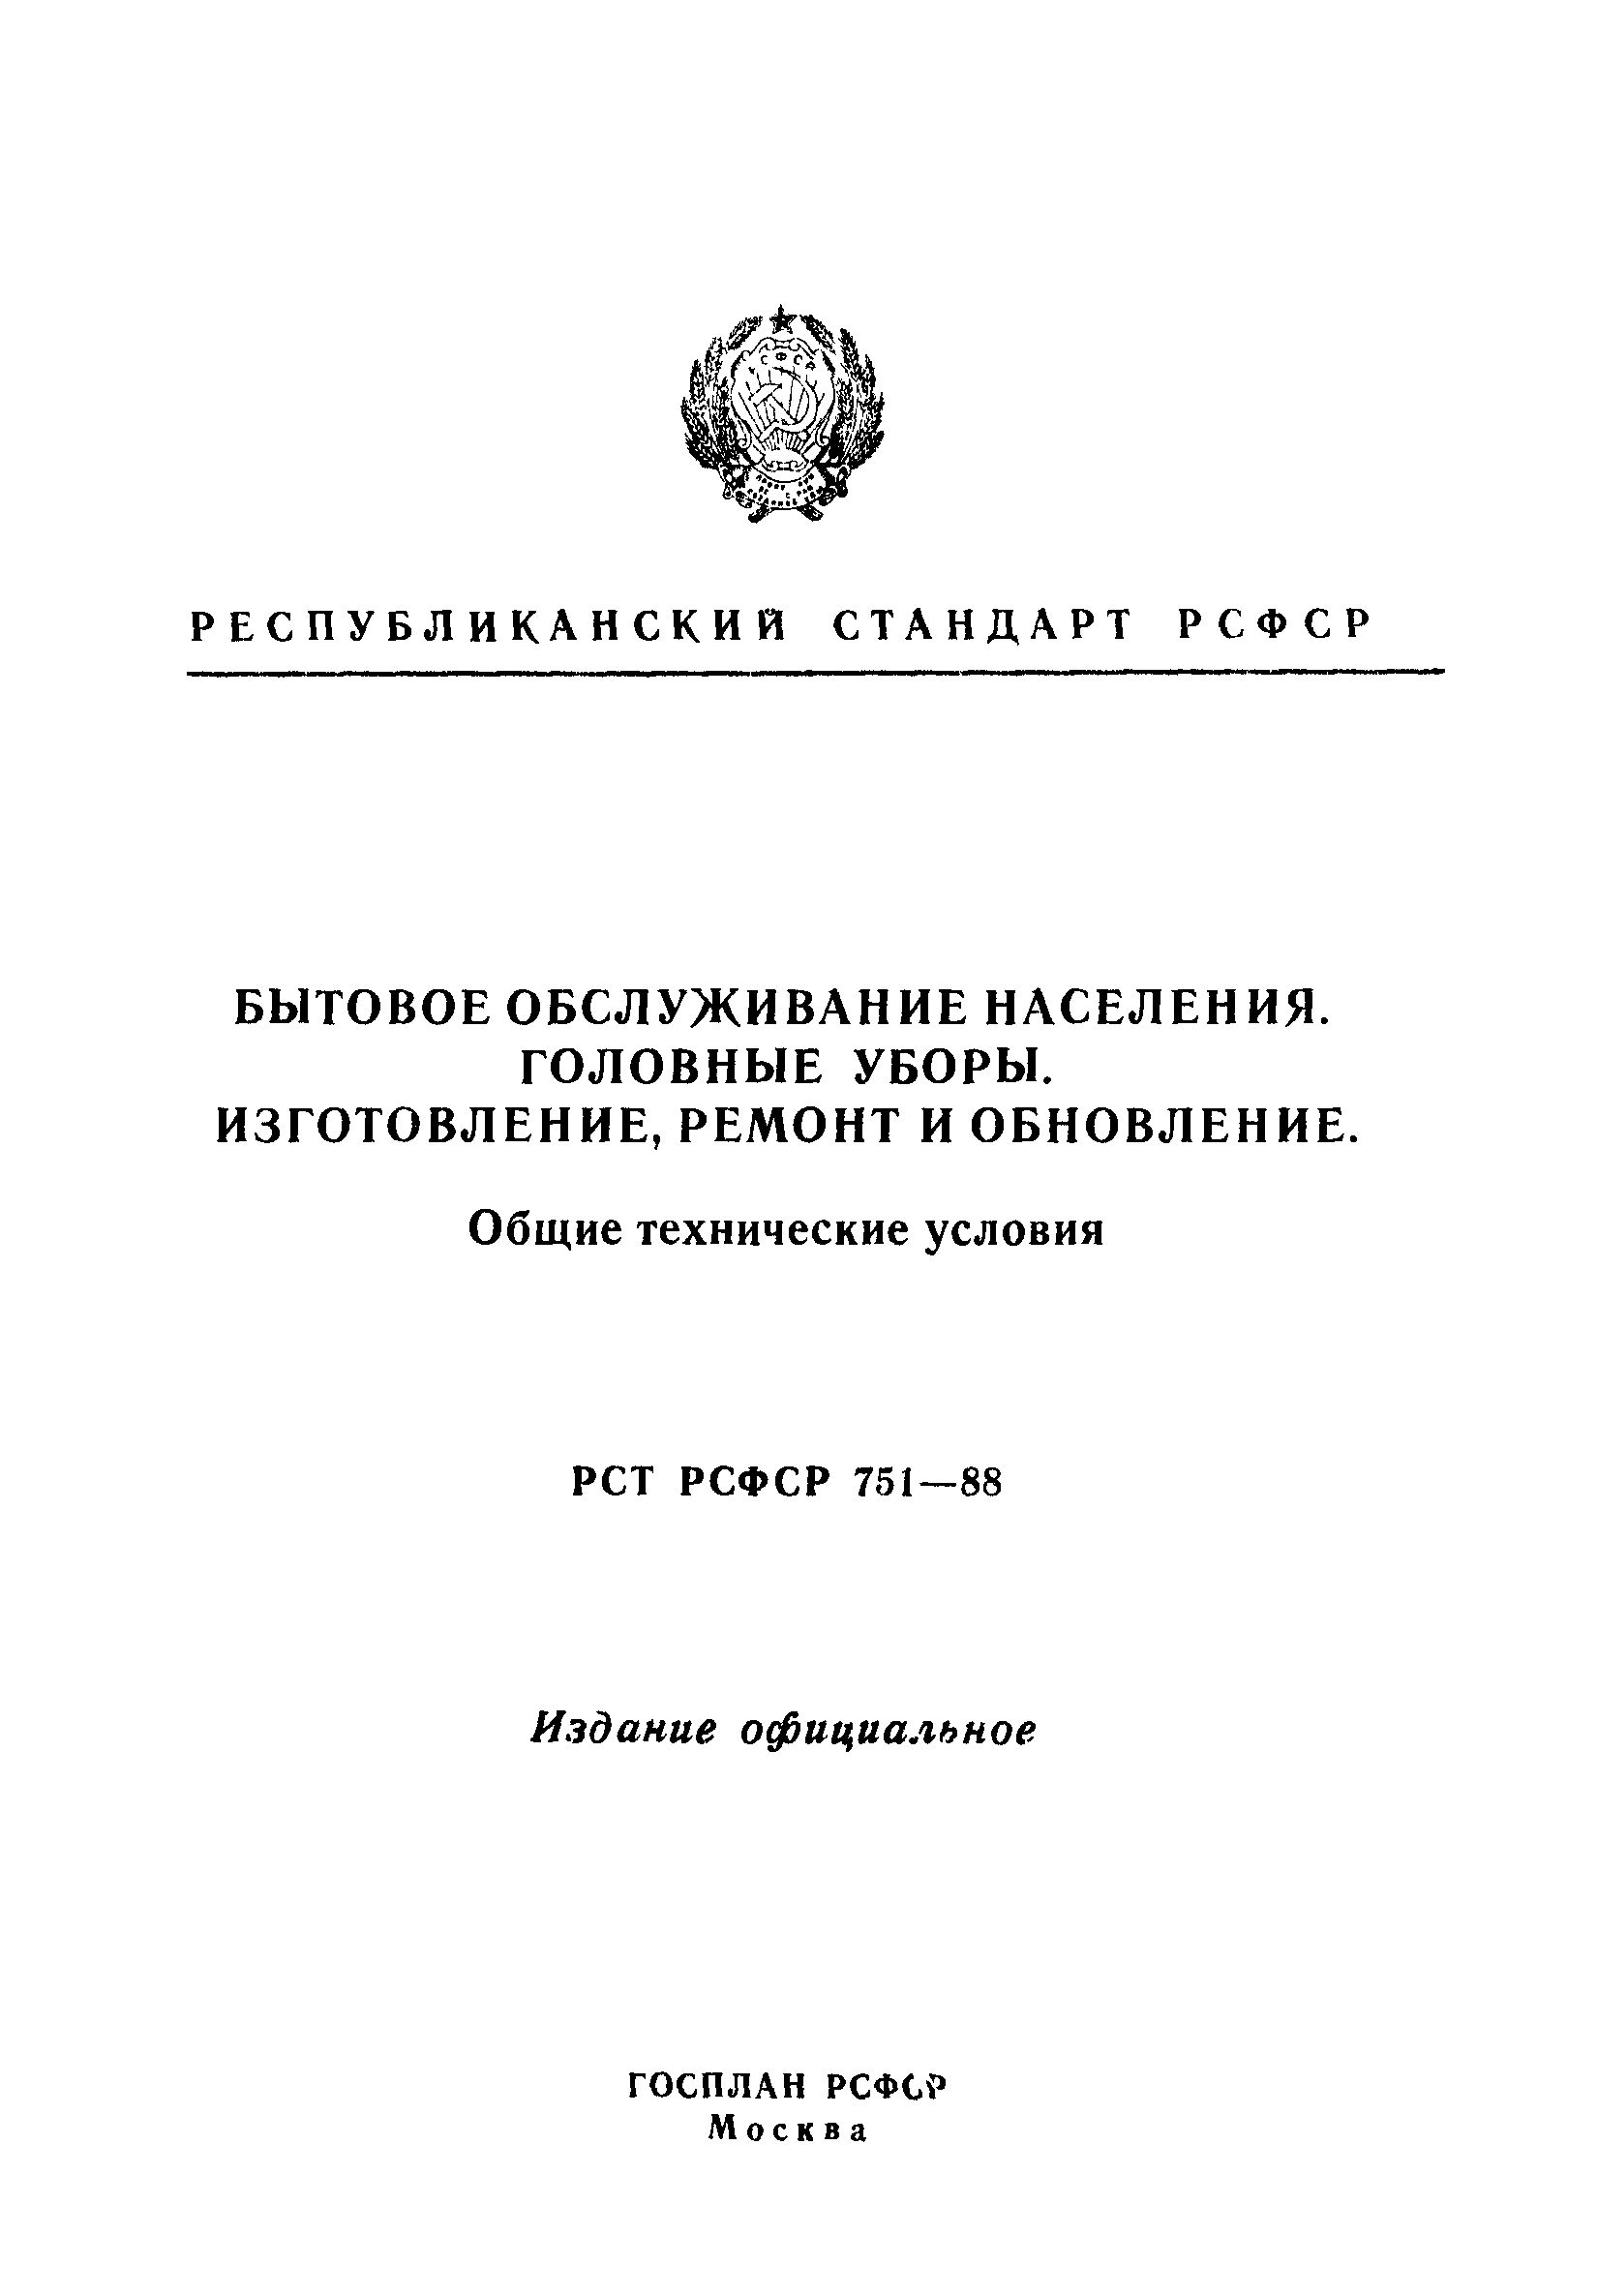 РСТ РСФСР 751-88